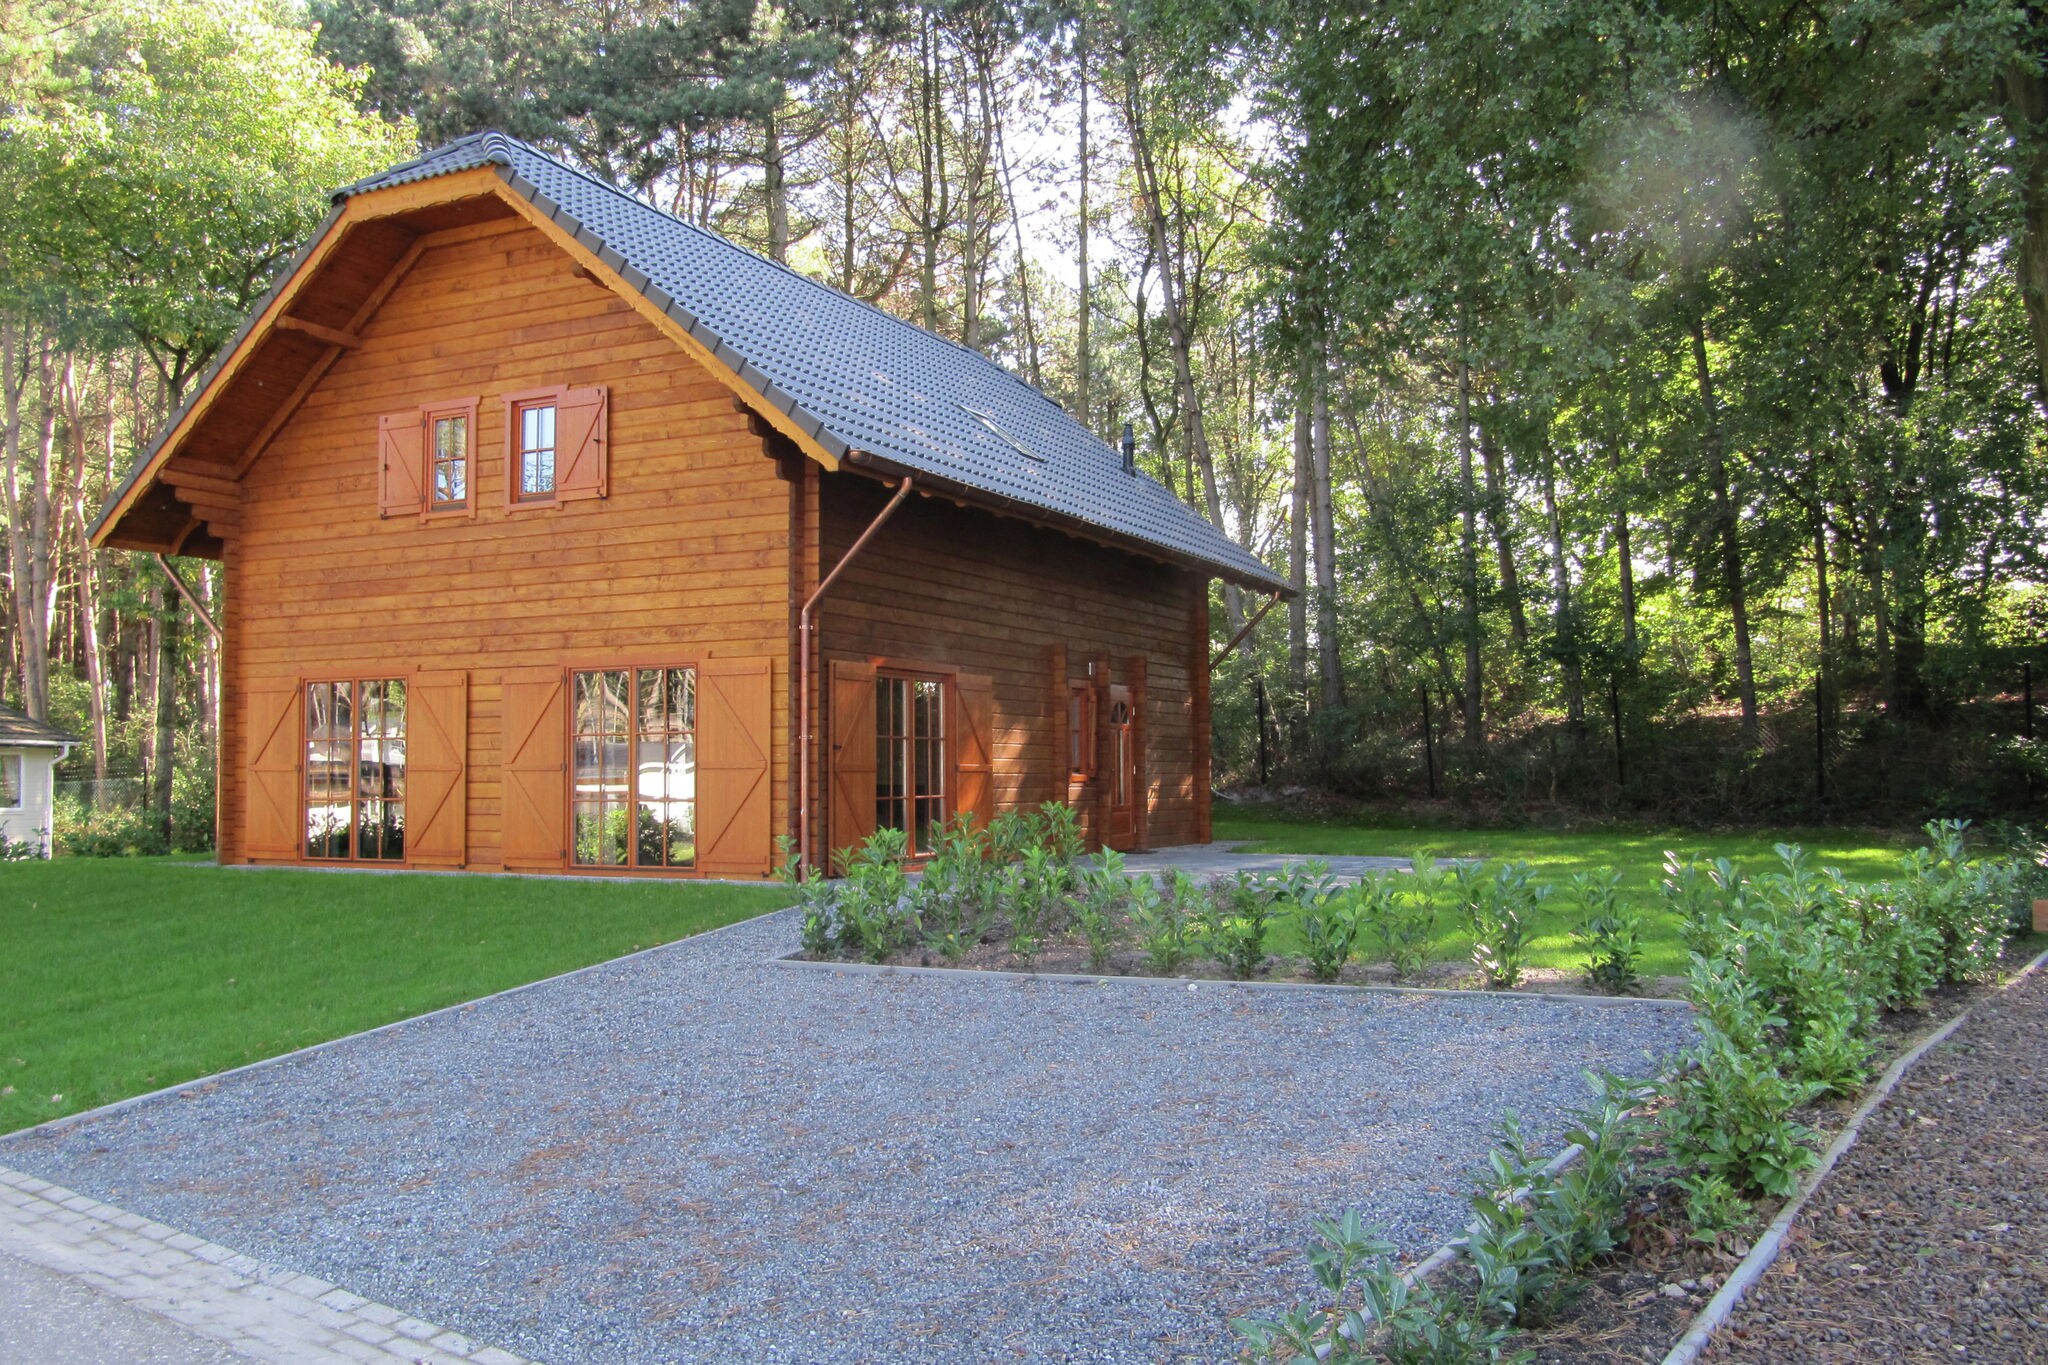 Wooden holiday home near Brunssummerheide